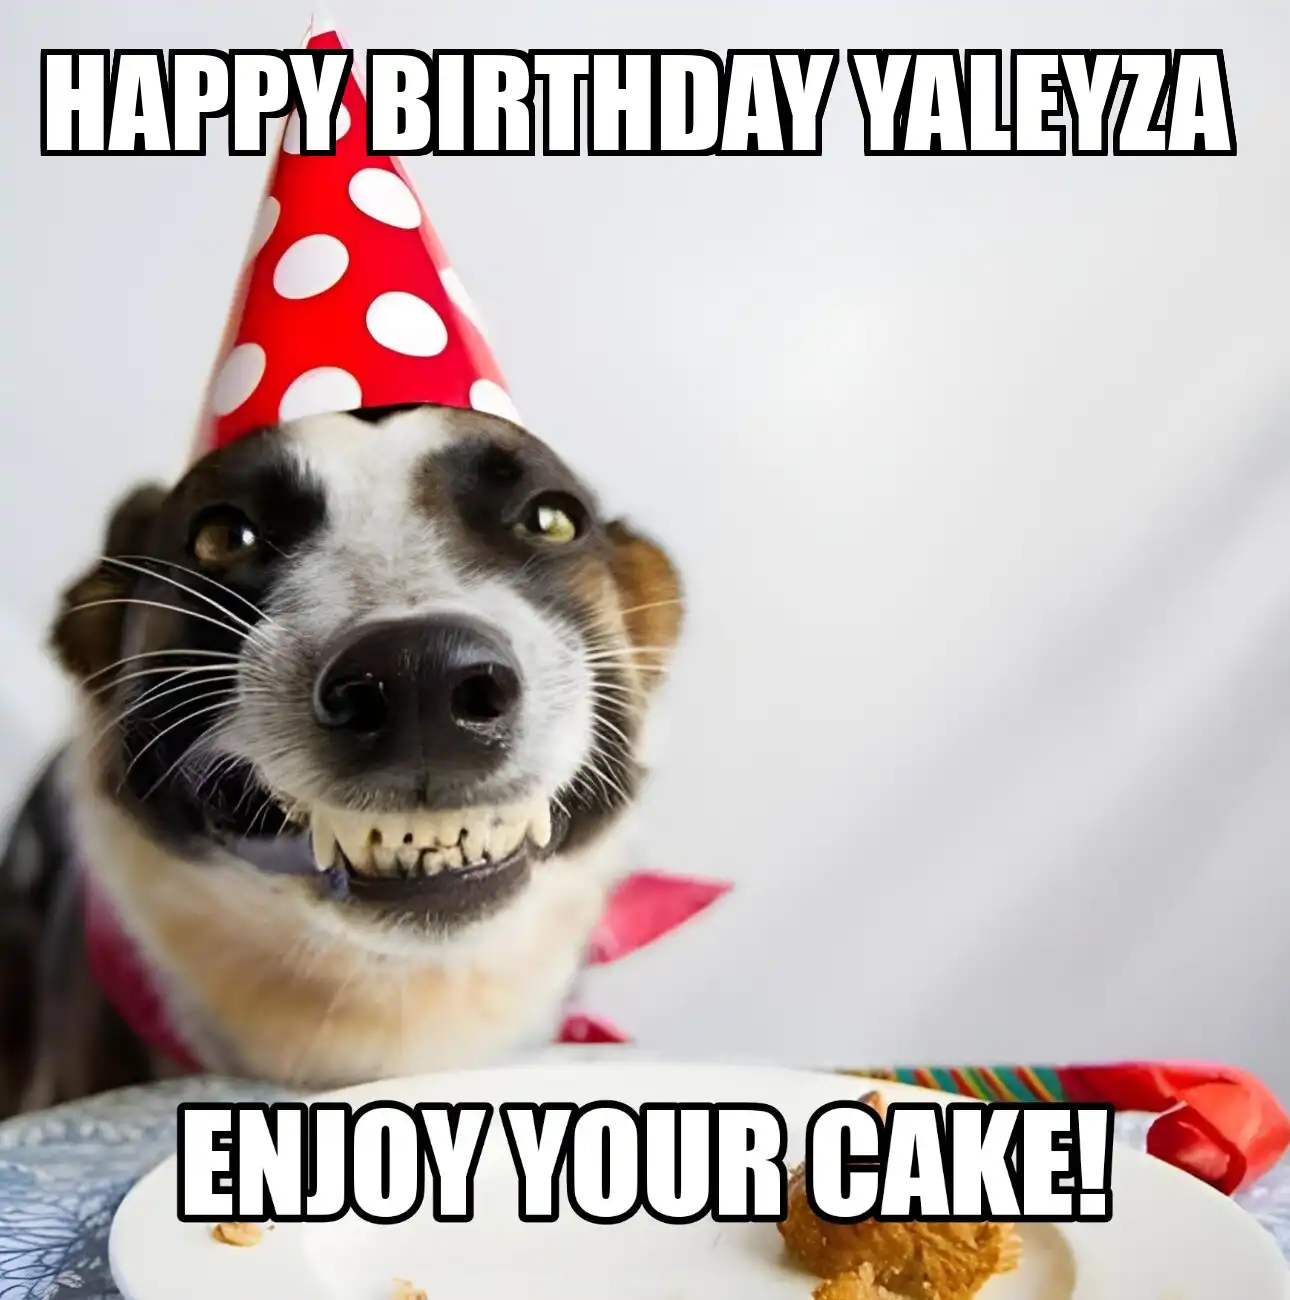 Happy Birthday Yaleyza Enjoy Your Cake Dog Meme